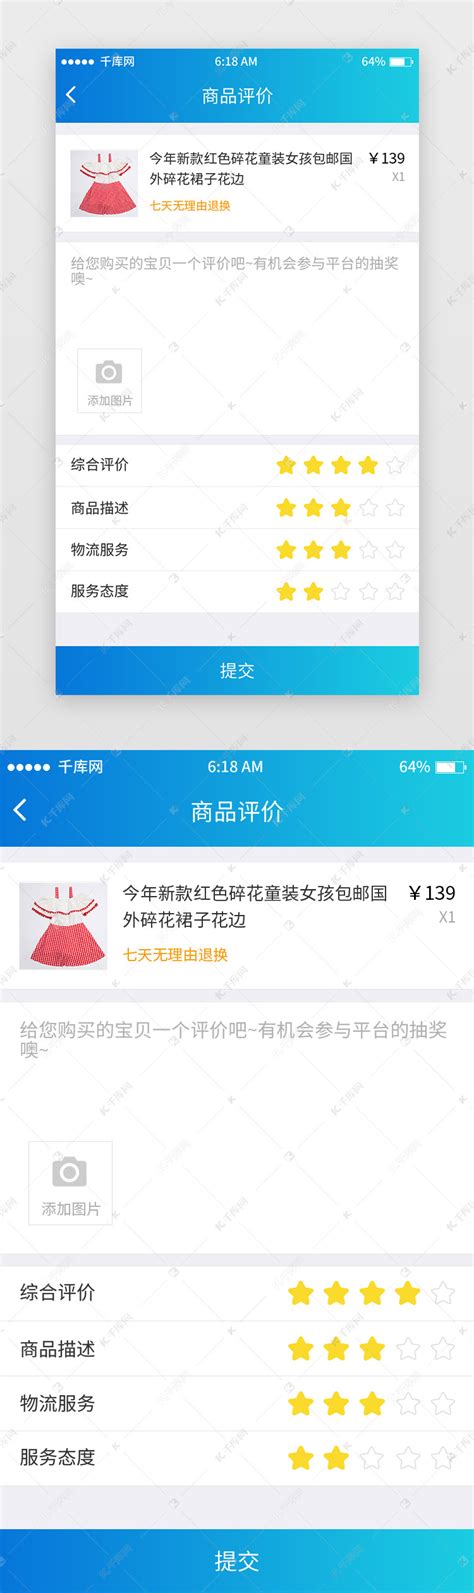 蓝色渐变商品评价页移动端app界面ui界面设计素材-千库网